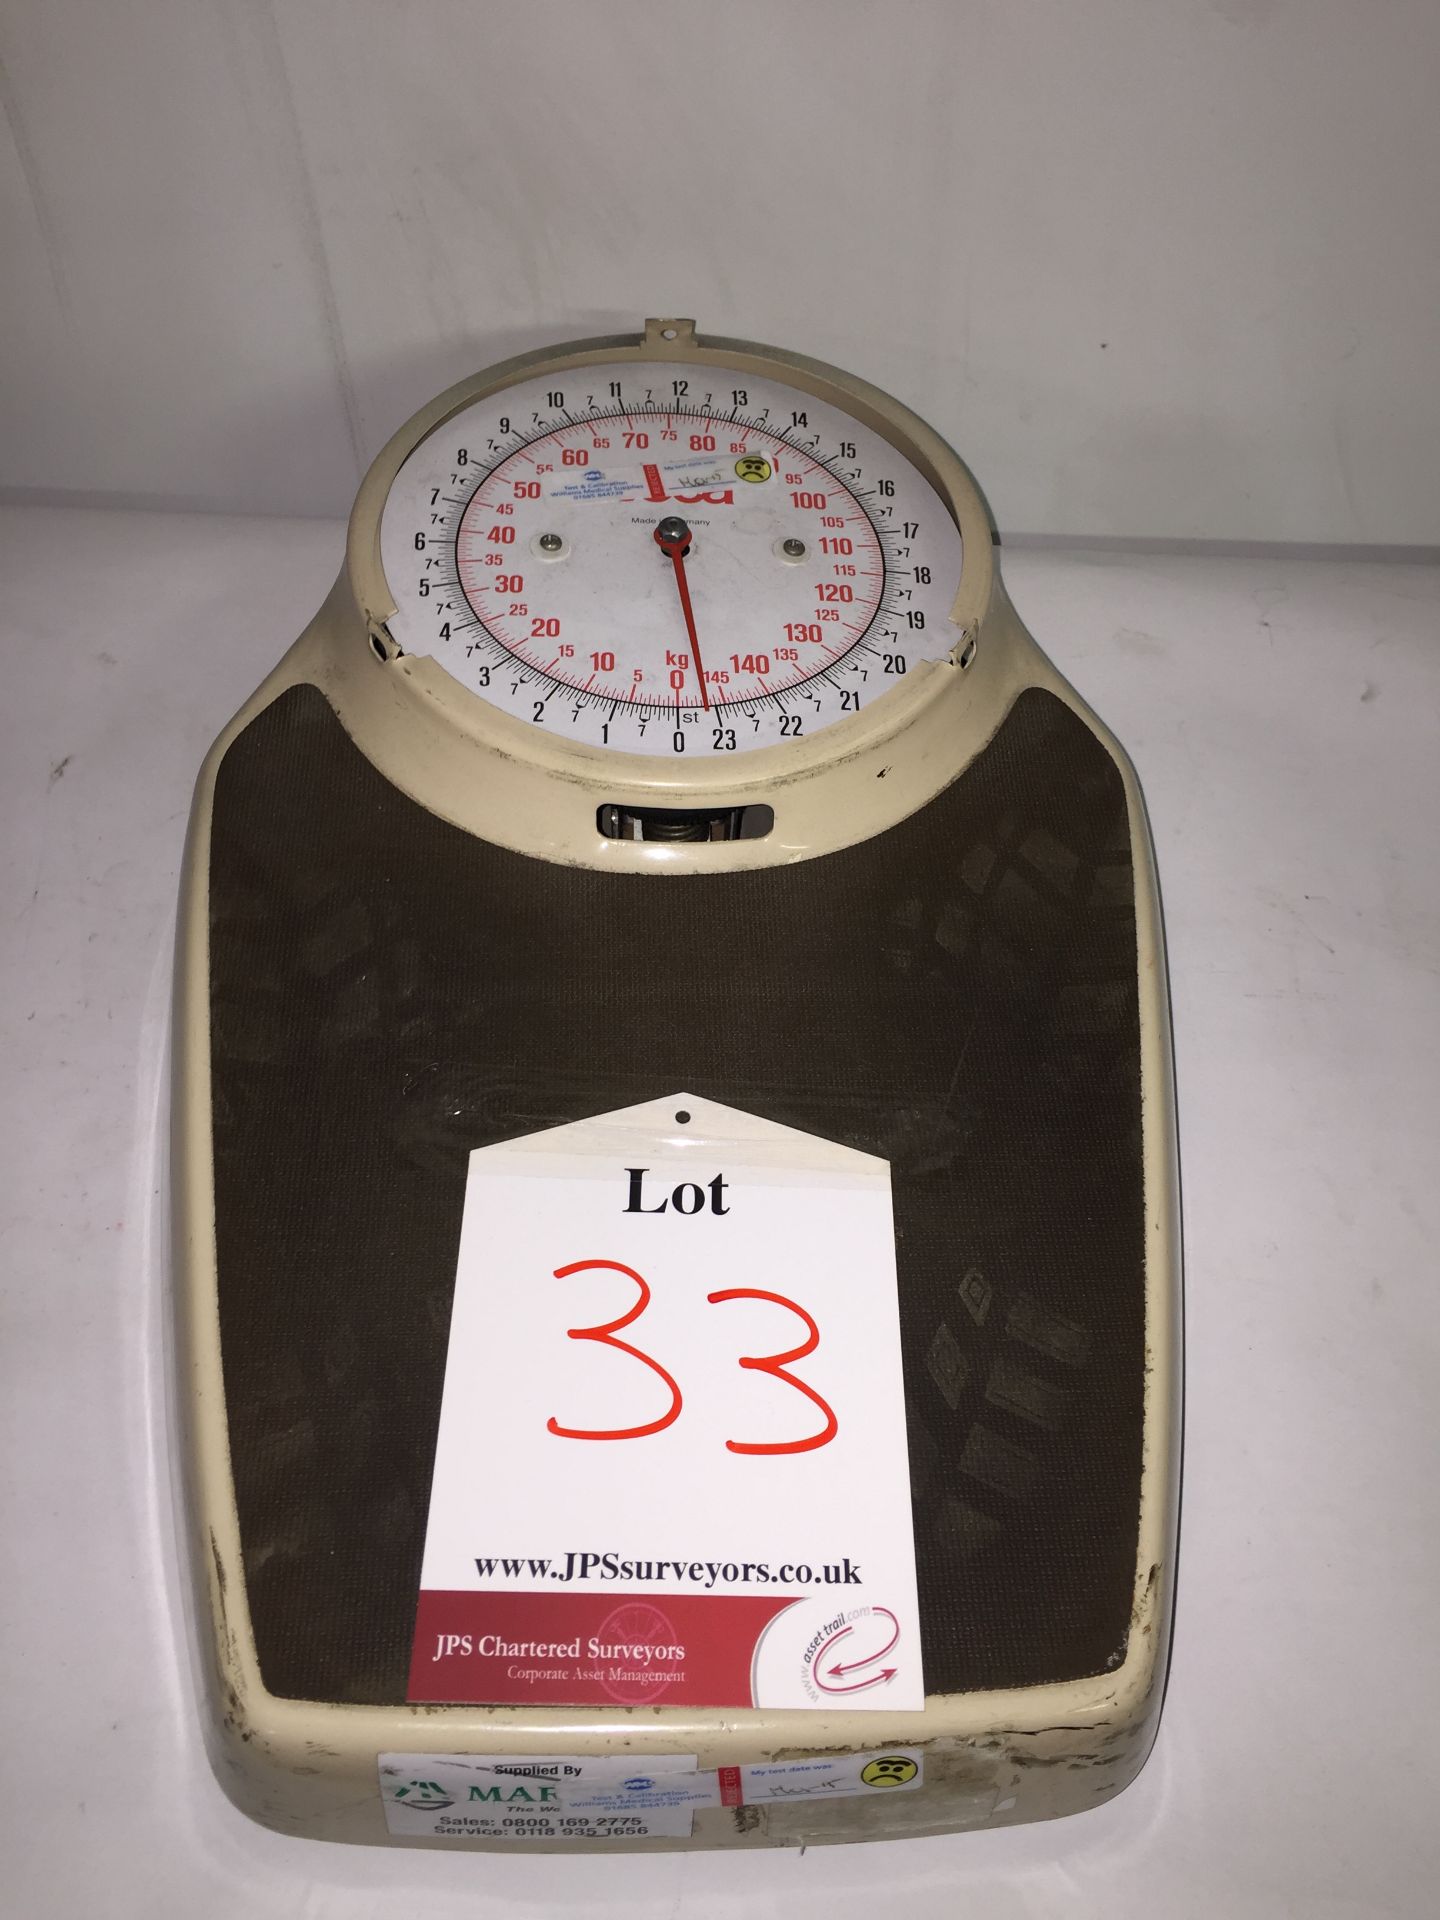 Seca Dial Weighing scales in Brown